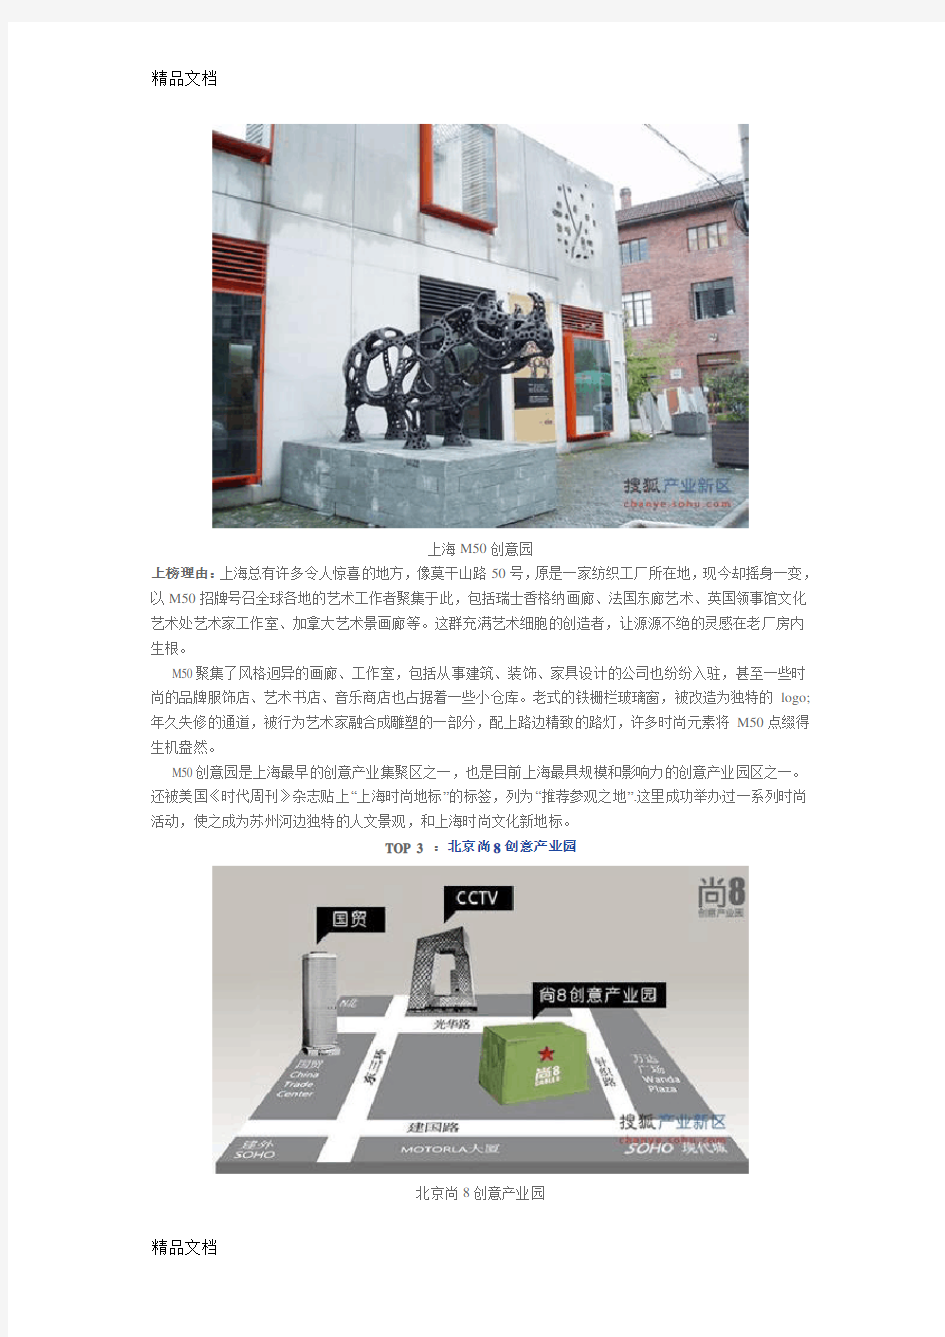 (整理)年中国文化创意产业最受关注的十大园区.